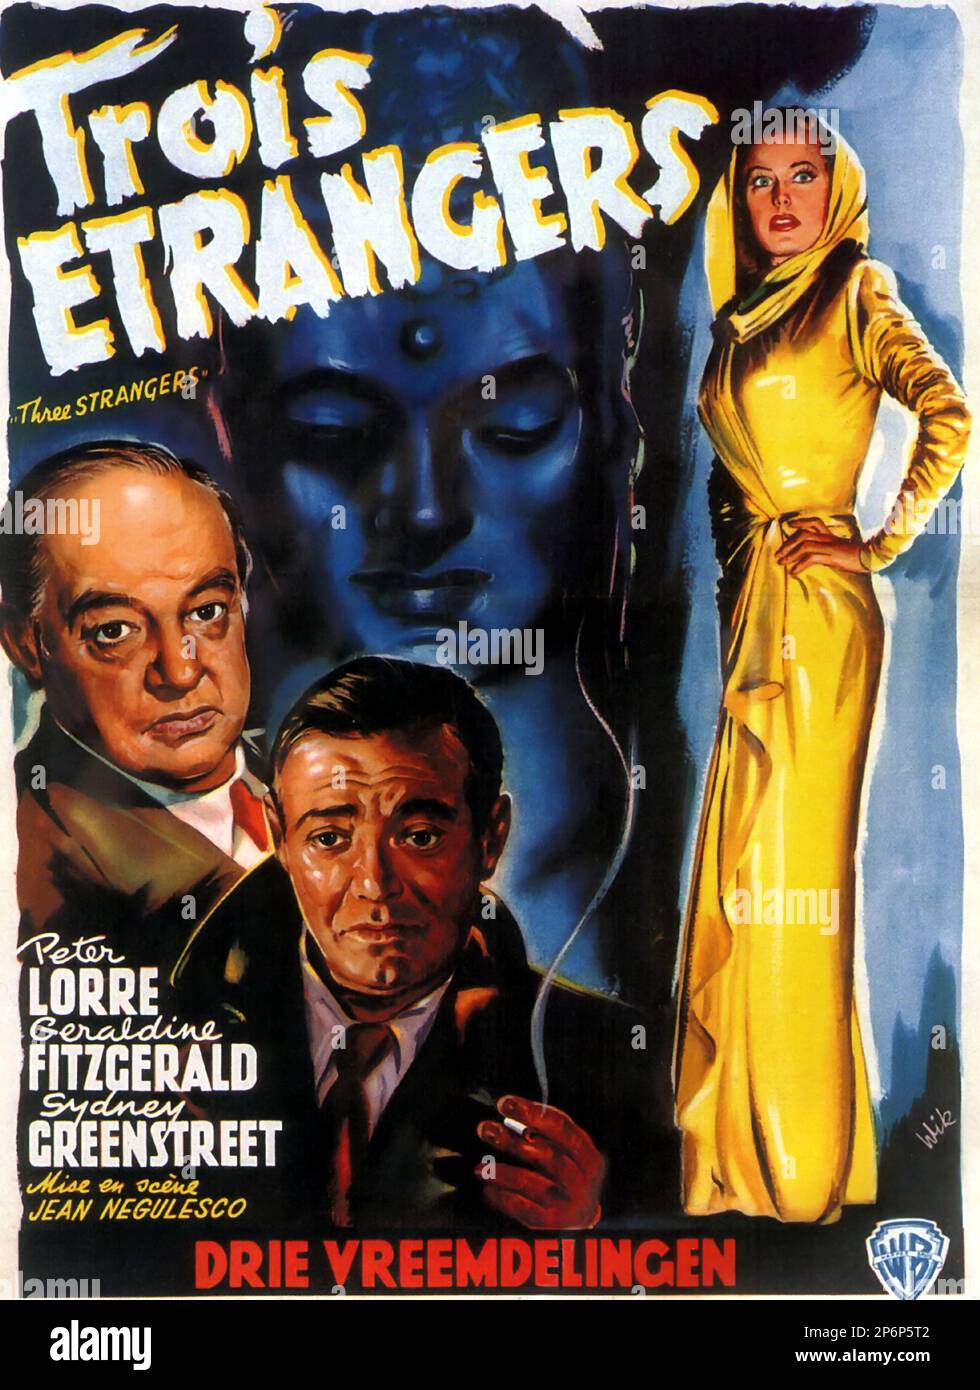 1946 : der FILM NOIR drei FREMDE von JEAN NEGULESCO mit PETER LORRE , Geraldine Fitzgerald und Sydney Greenstreet , aus einem Roman von Jack Finney . Werbeposter aus Belgien - FILM - KINO - Poster pubblicitario - Poster - Werbung - locandina - DIVA - DIVINA - GÖTTLICH - VAMP - FEMME FATAL - --- Archivio GBB Stockfoto